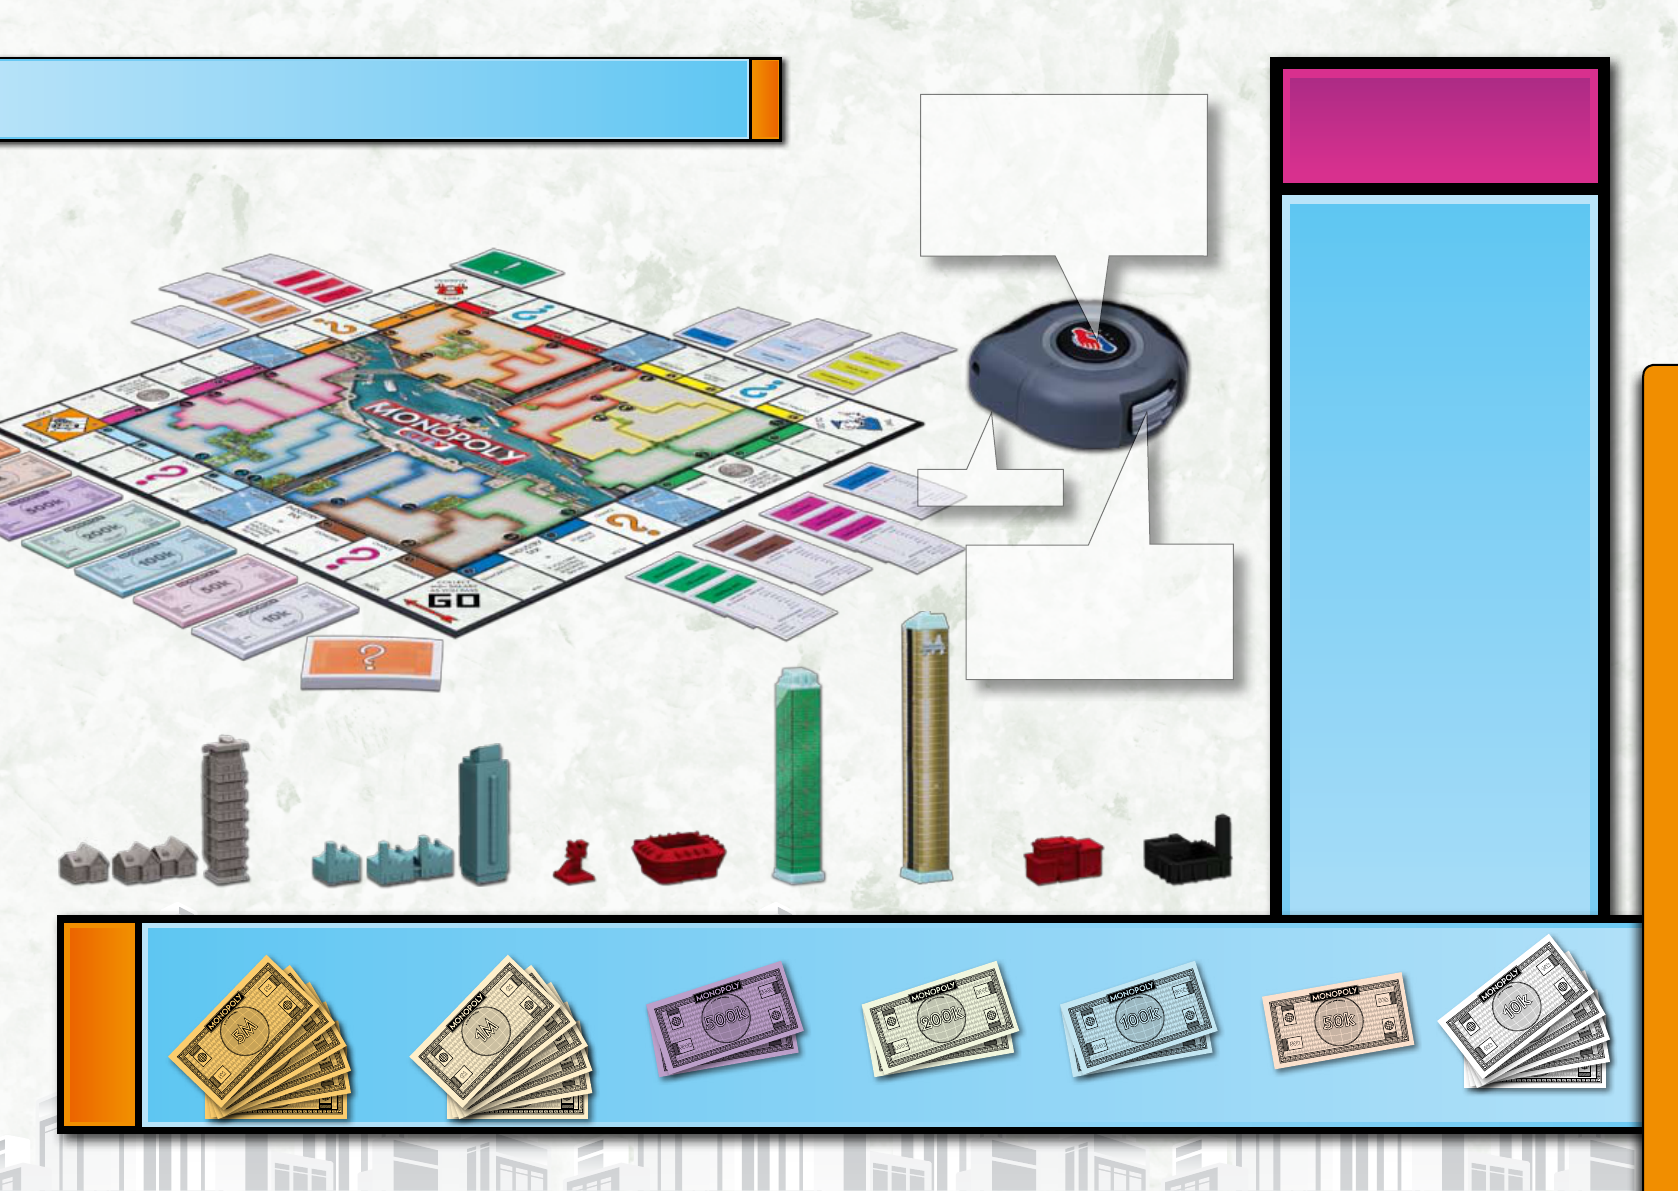 monopoly city money